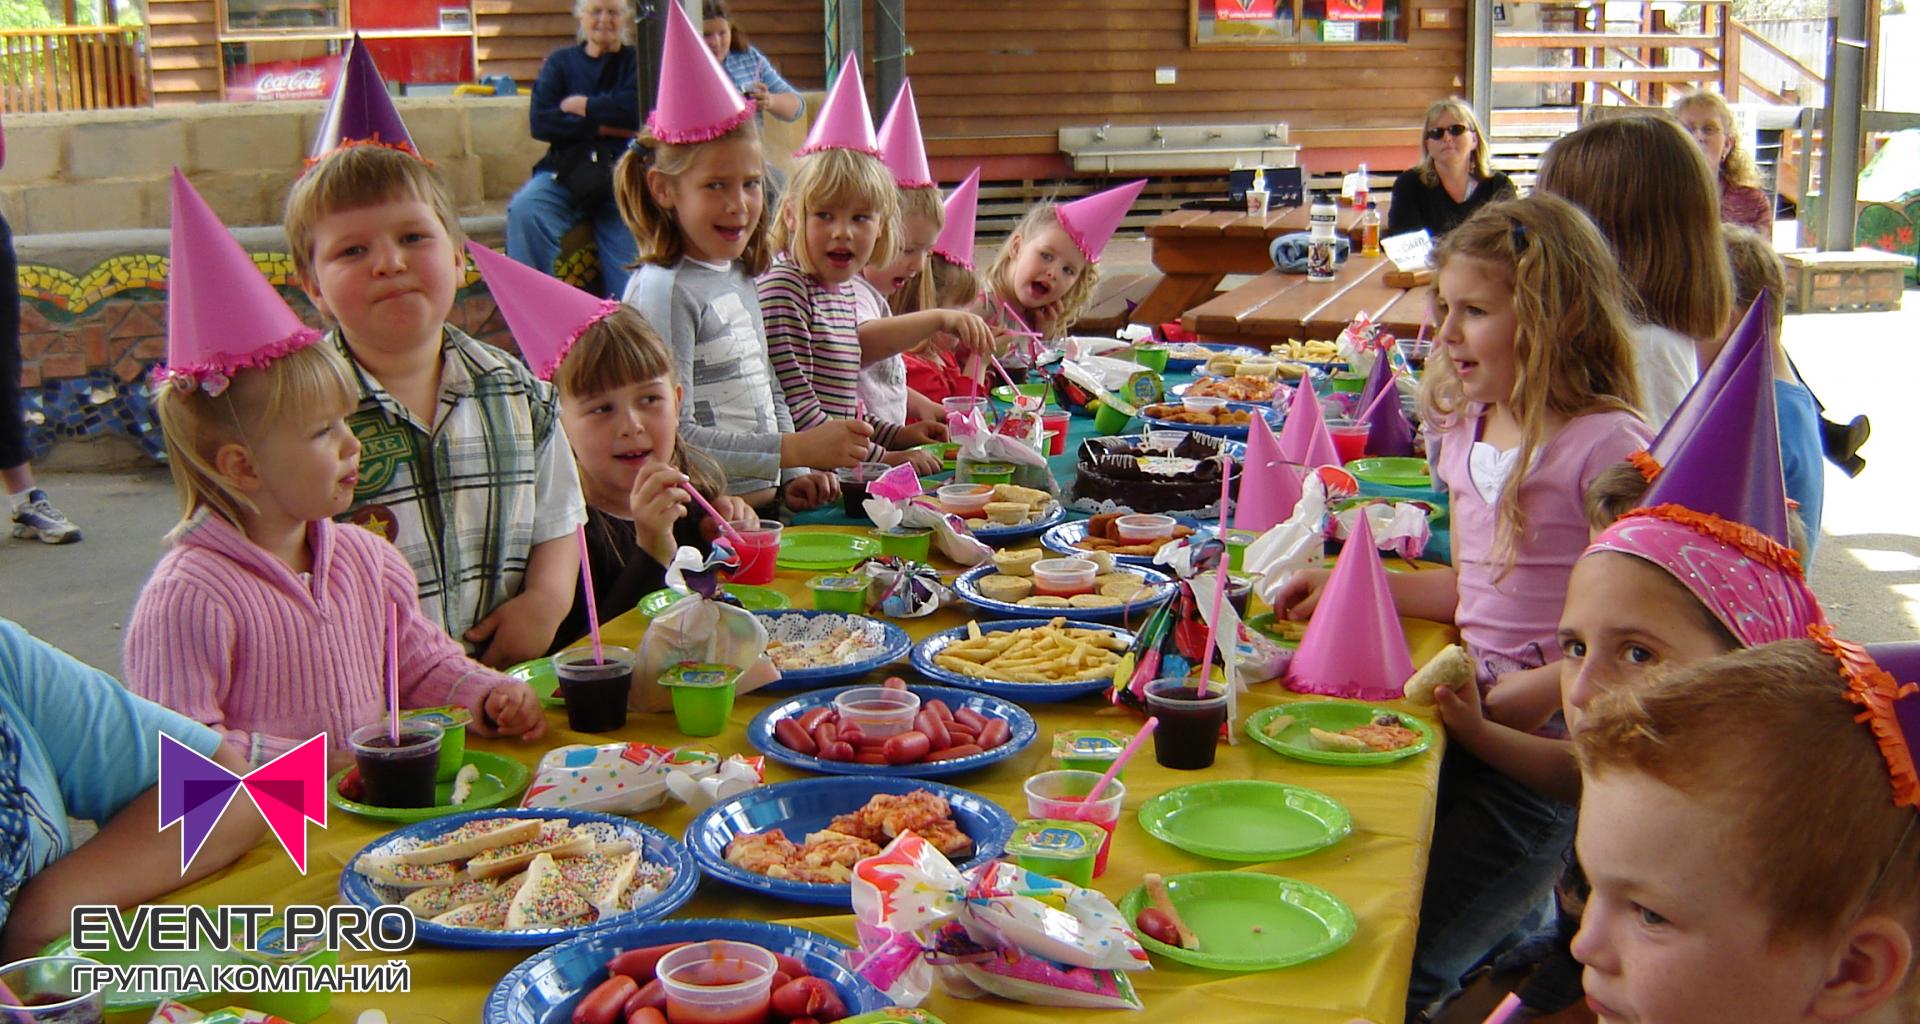 Праздничное развлечение. Детский стол на день рождения. Праздничный стол для детей. Детский стол на праздник. Детский праздничный стол на день рождения.